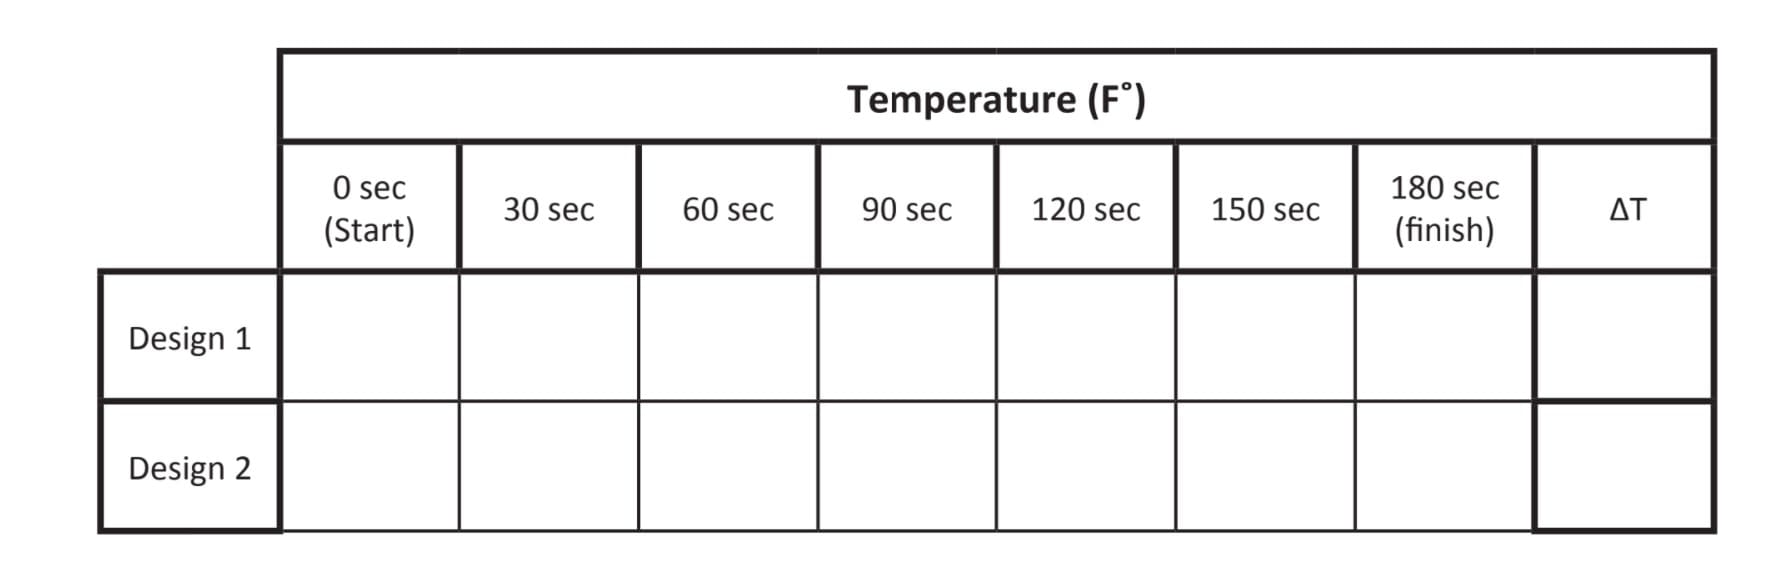 temperature worksheet